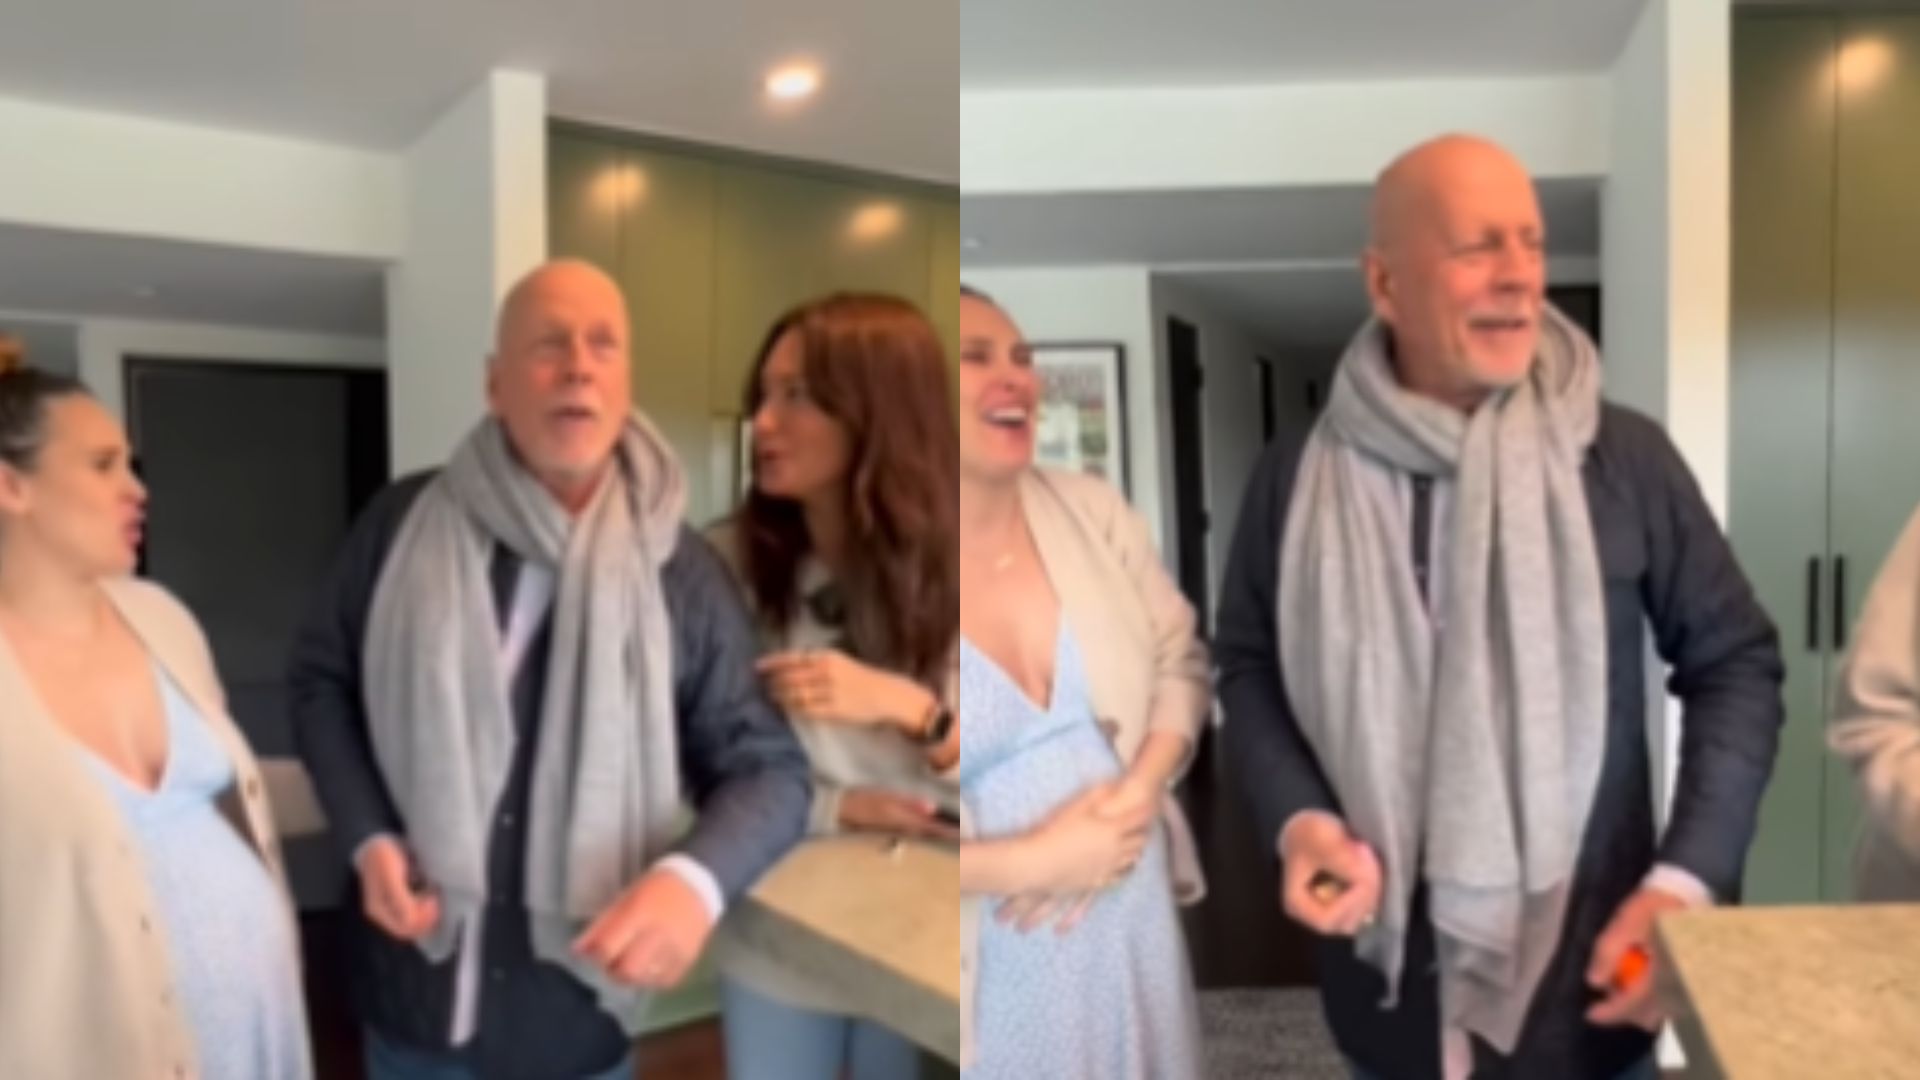 Hz Família De Bruce Willis Celebra 68 Anos Do Ator Após Diagnóstico De Demência A Gazeta